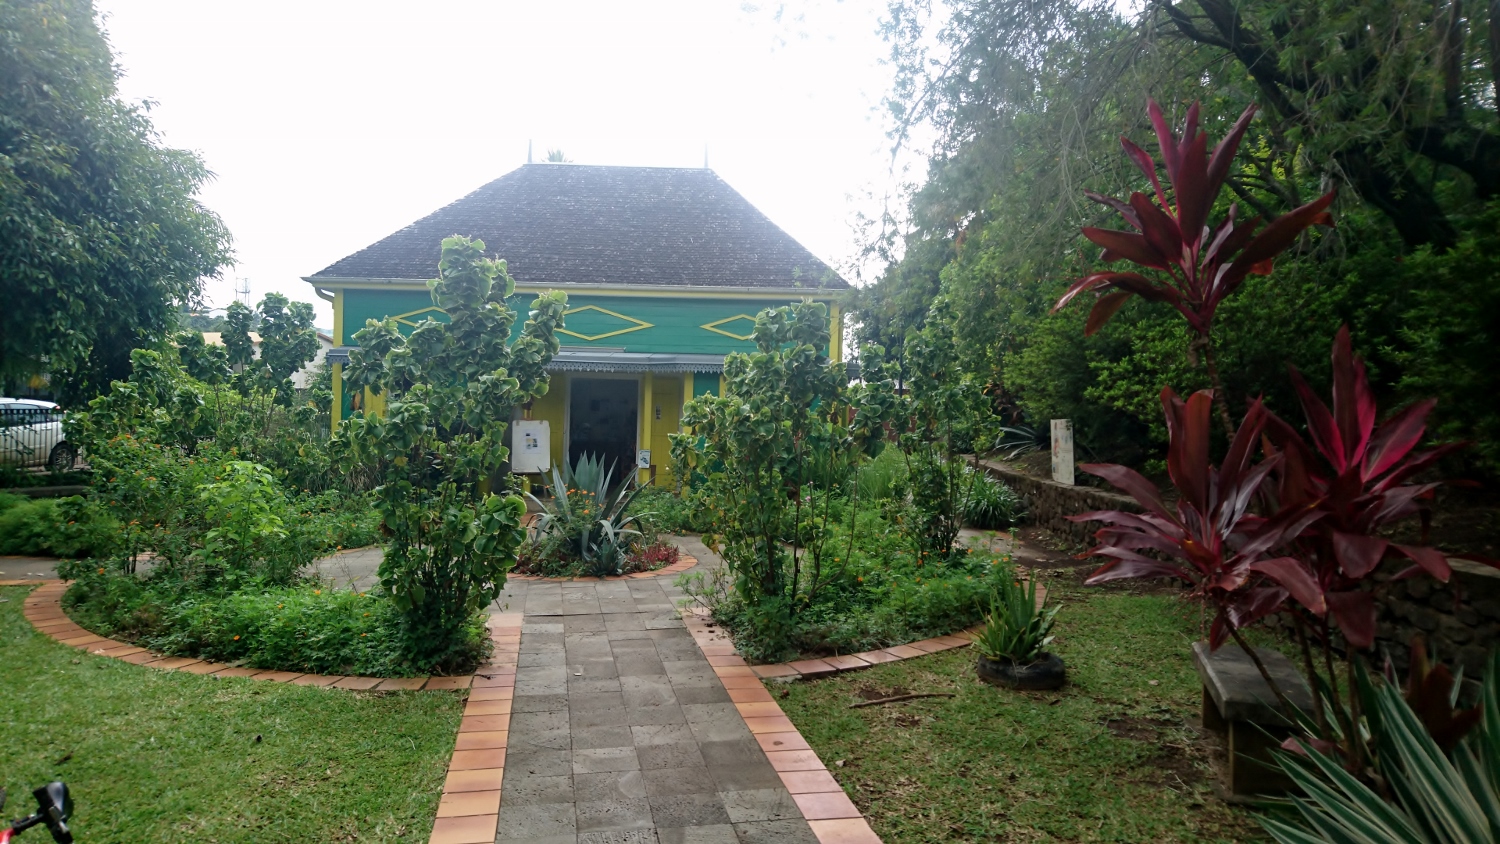 L’office de tourisme de l’Entre-Deux a pris place dans une maison créole traditionnelle.